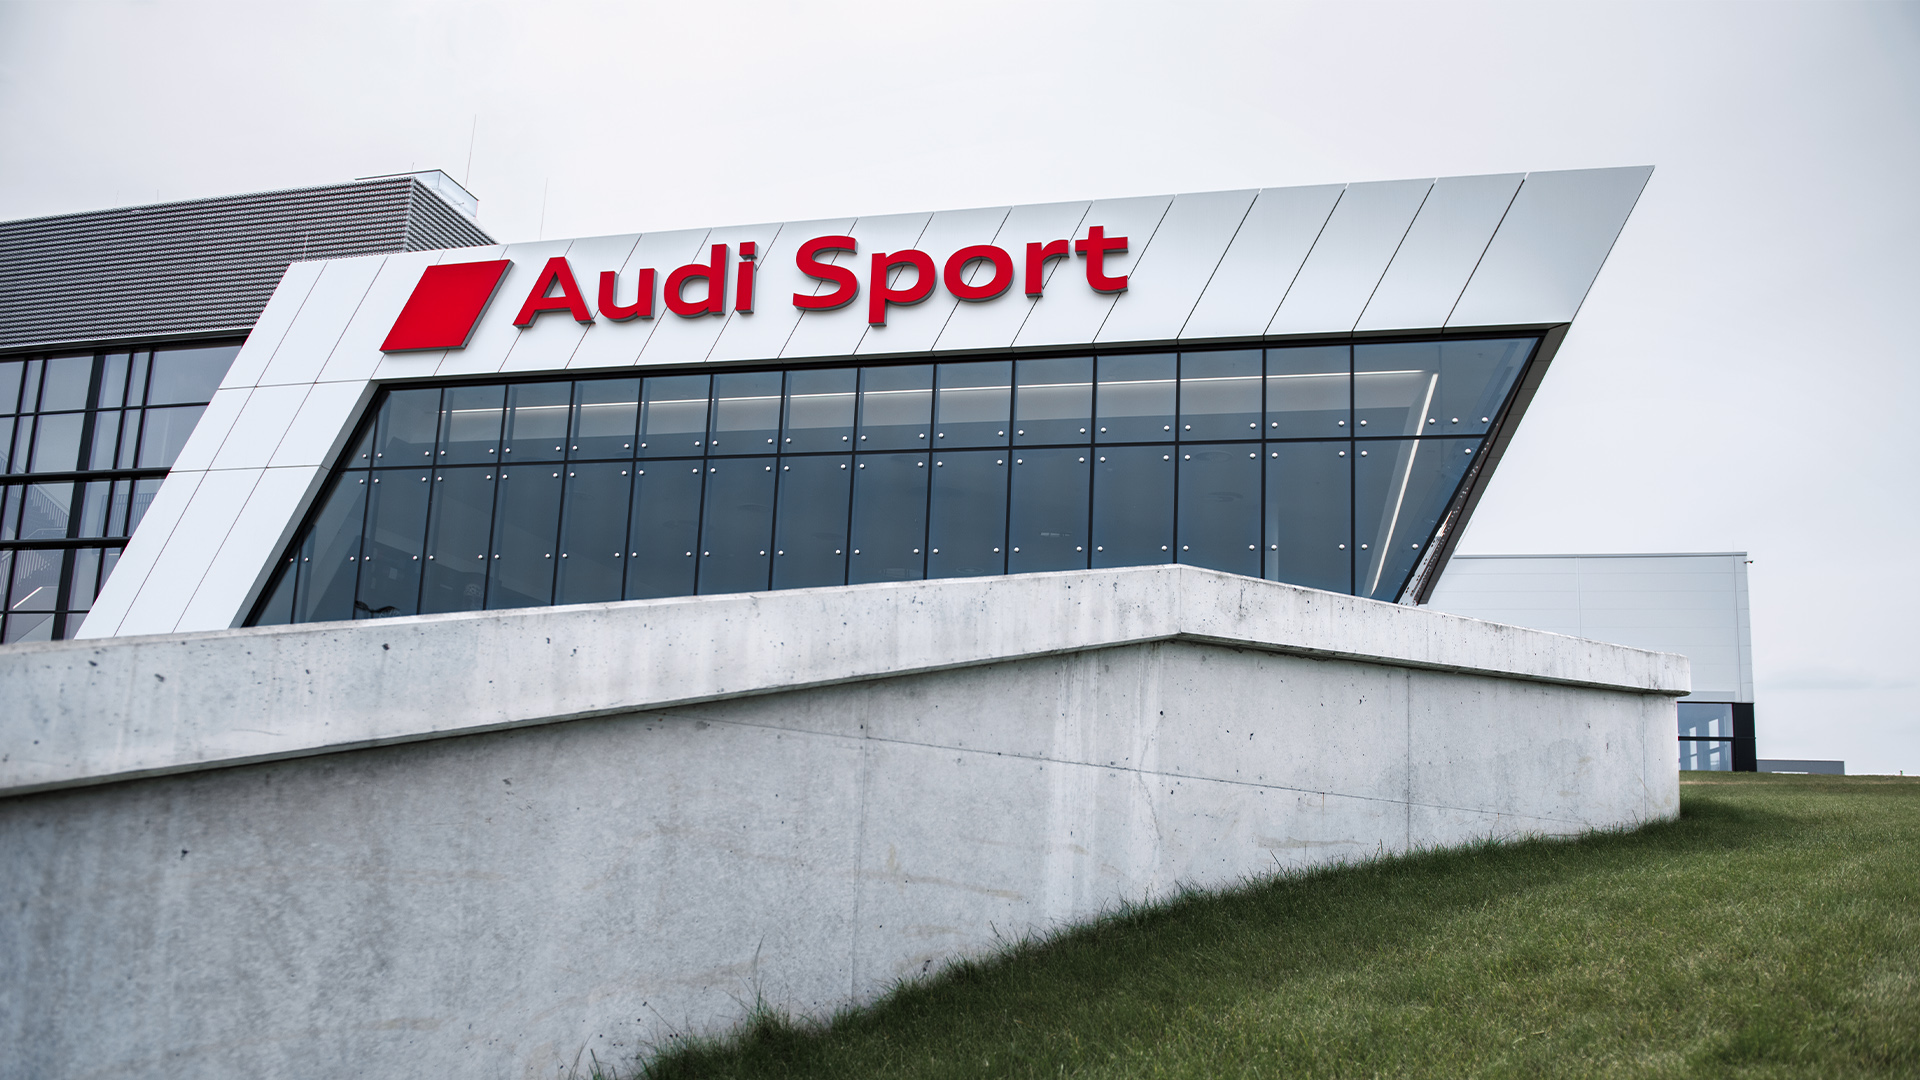 Za niewielkim murkiem widać budynek Audi Sport.